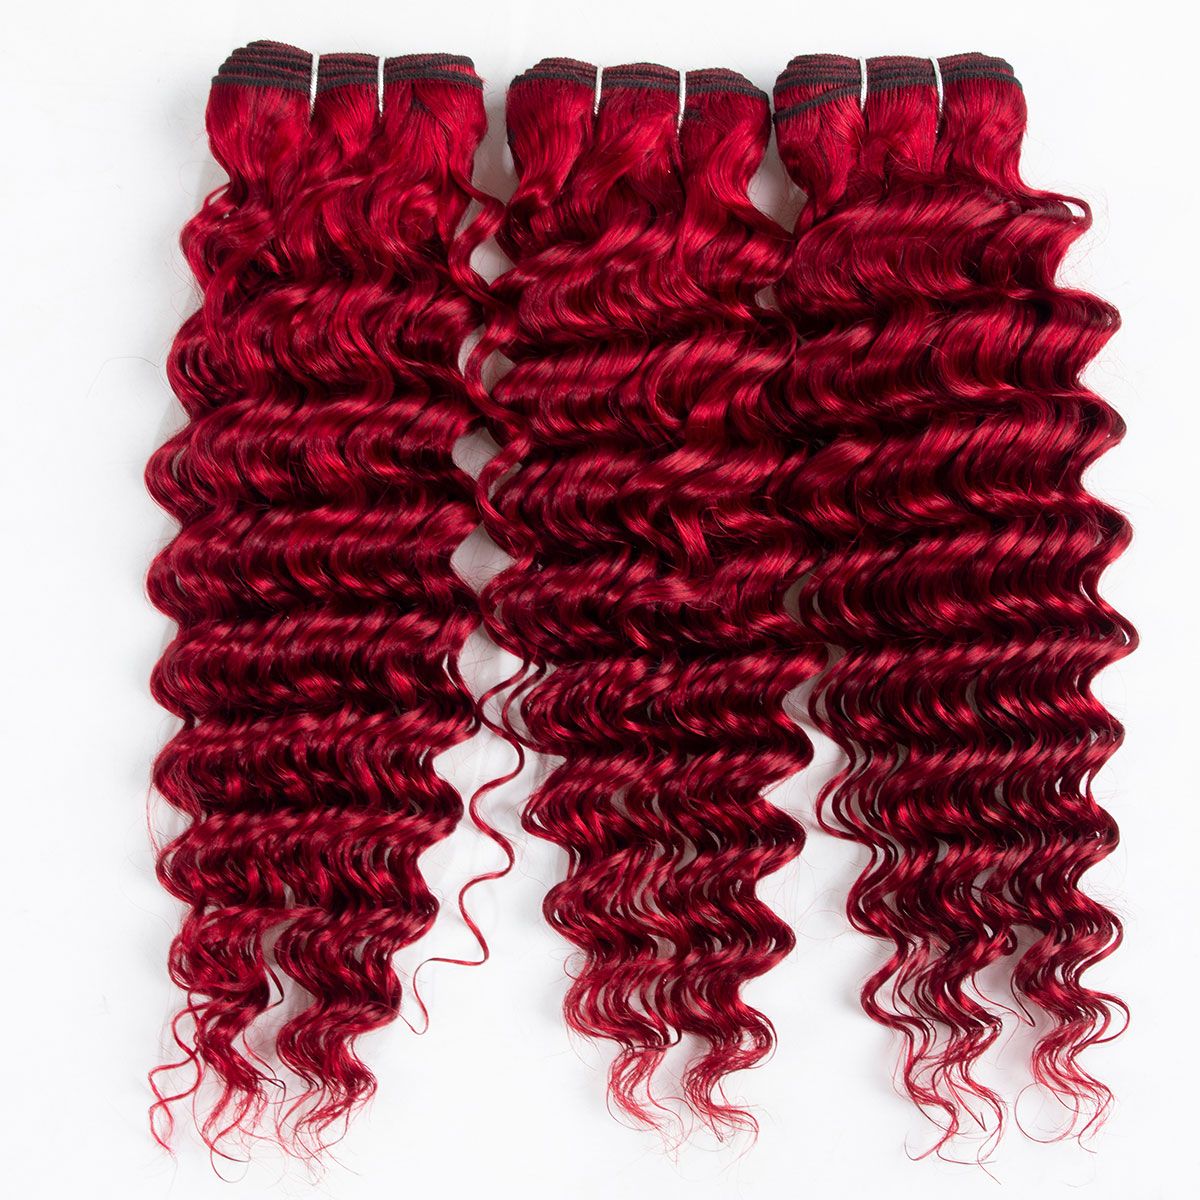 Red Deep Wave 3 Bundles Brazilian Virgin Hair Extensions